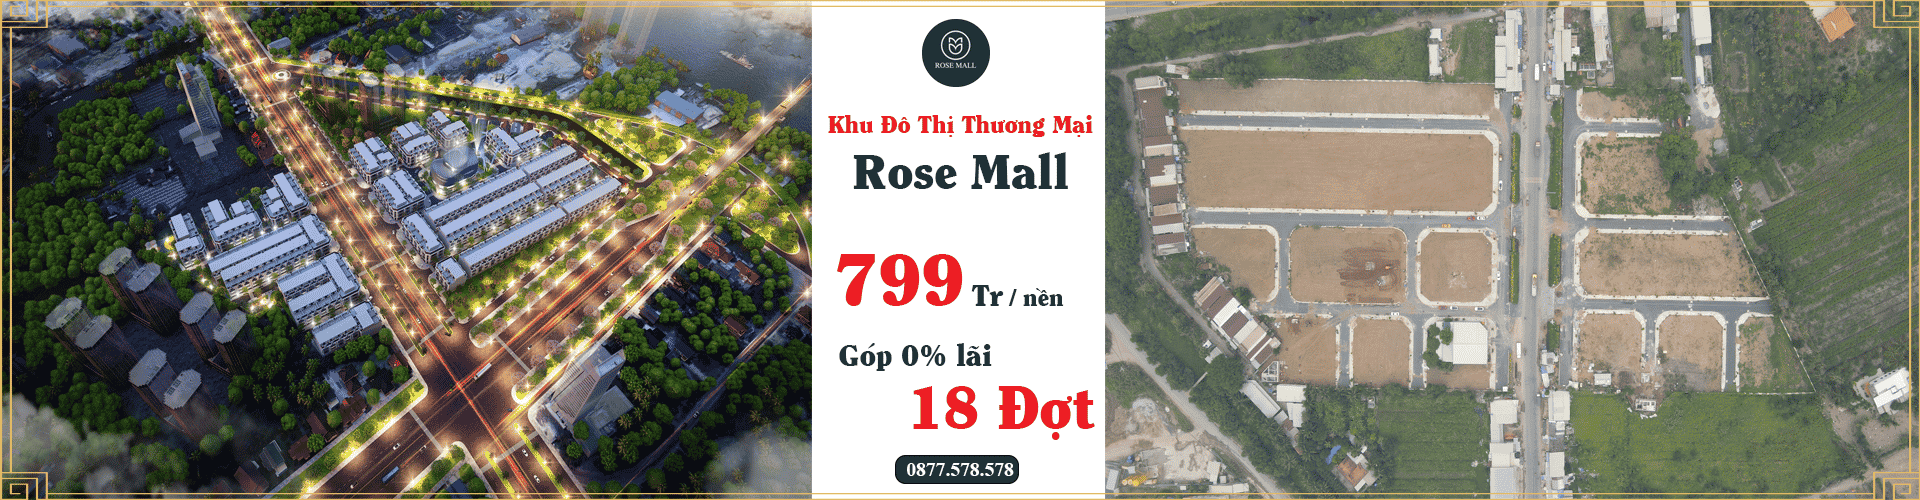 khu đô thị thương mại rose mall